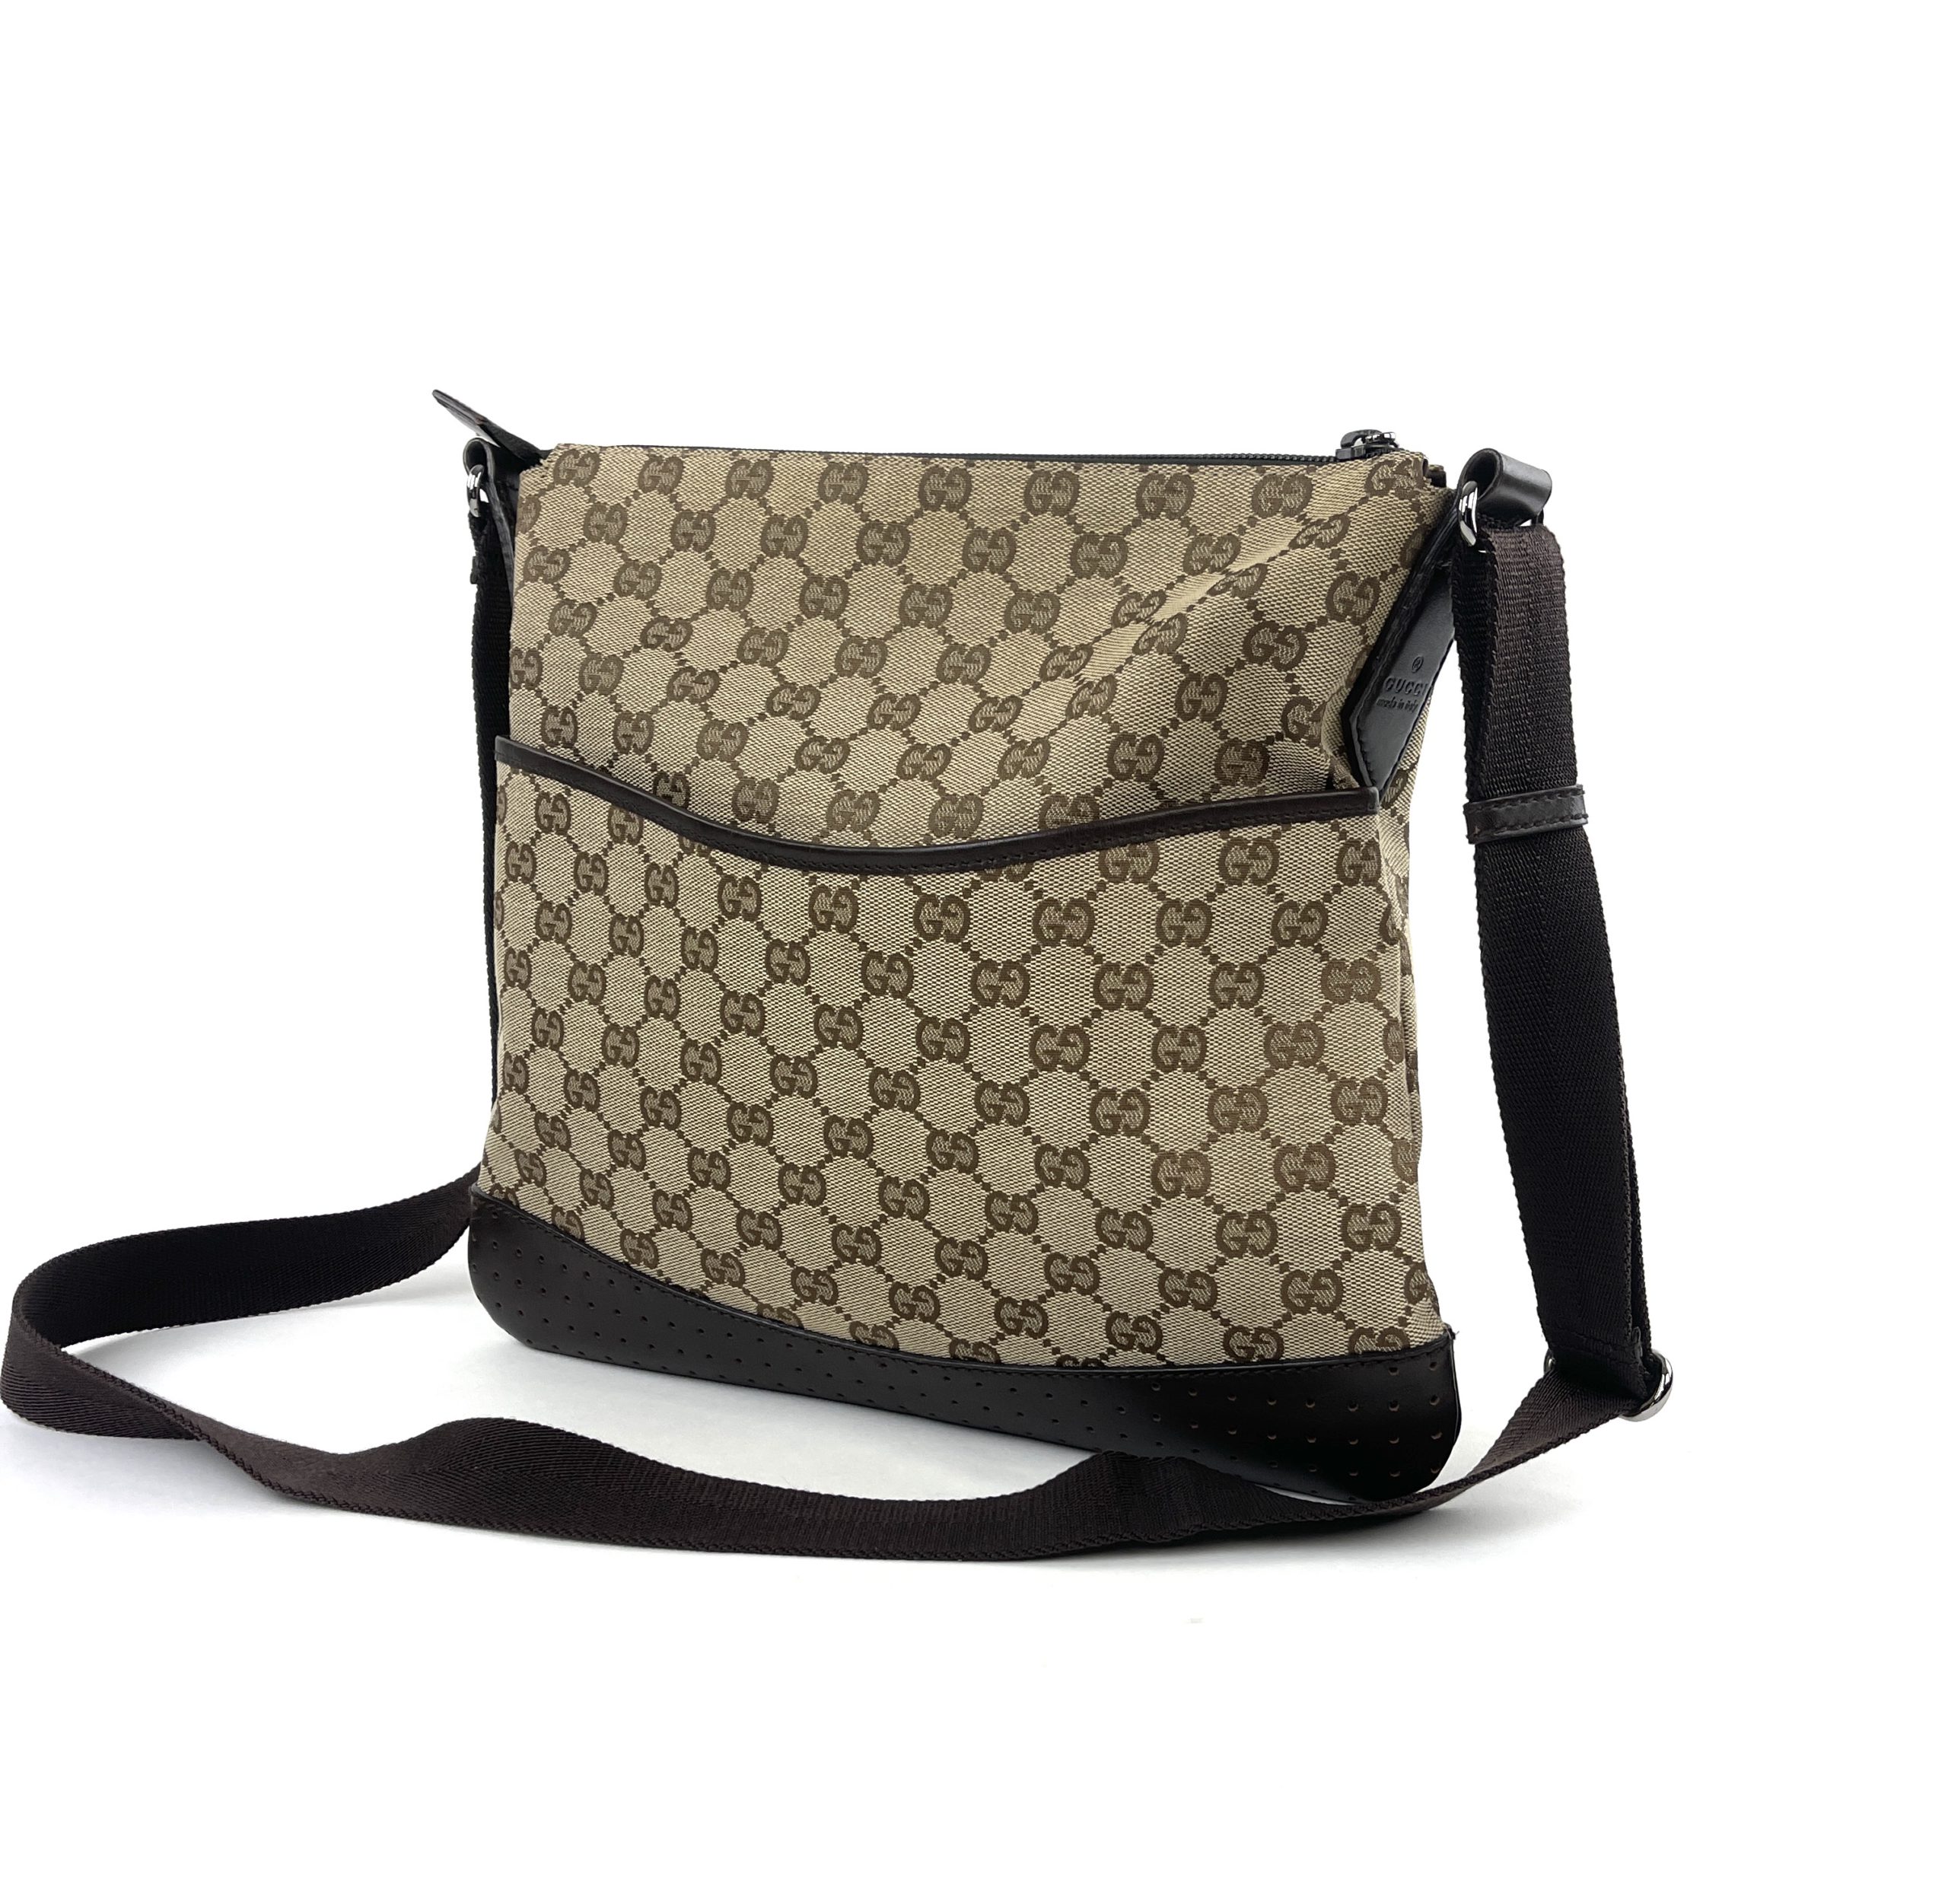 Gucci GG Canvas Messenger Bag - World Goods You, LLC